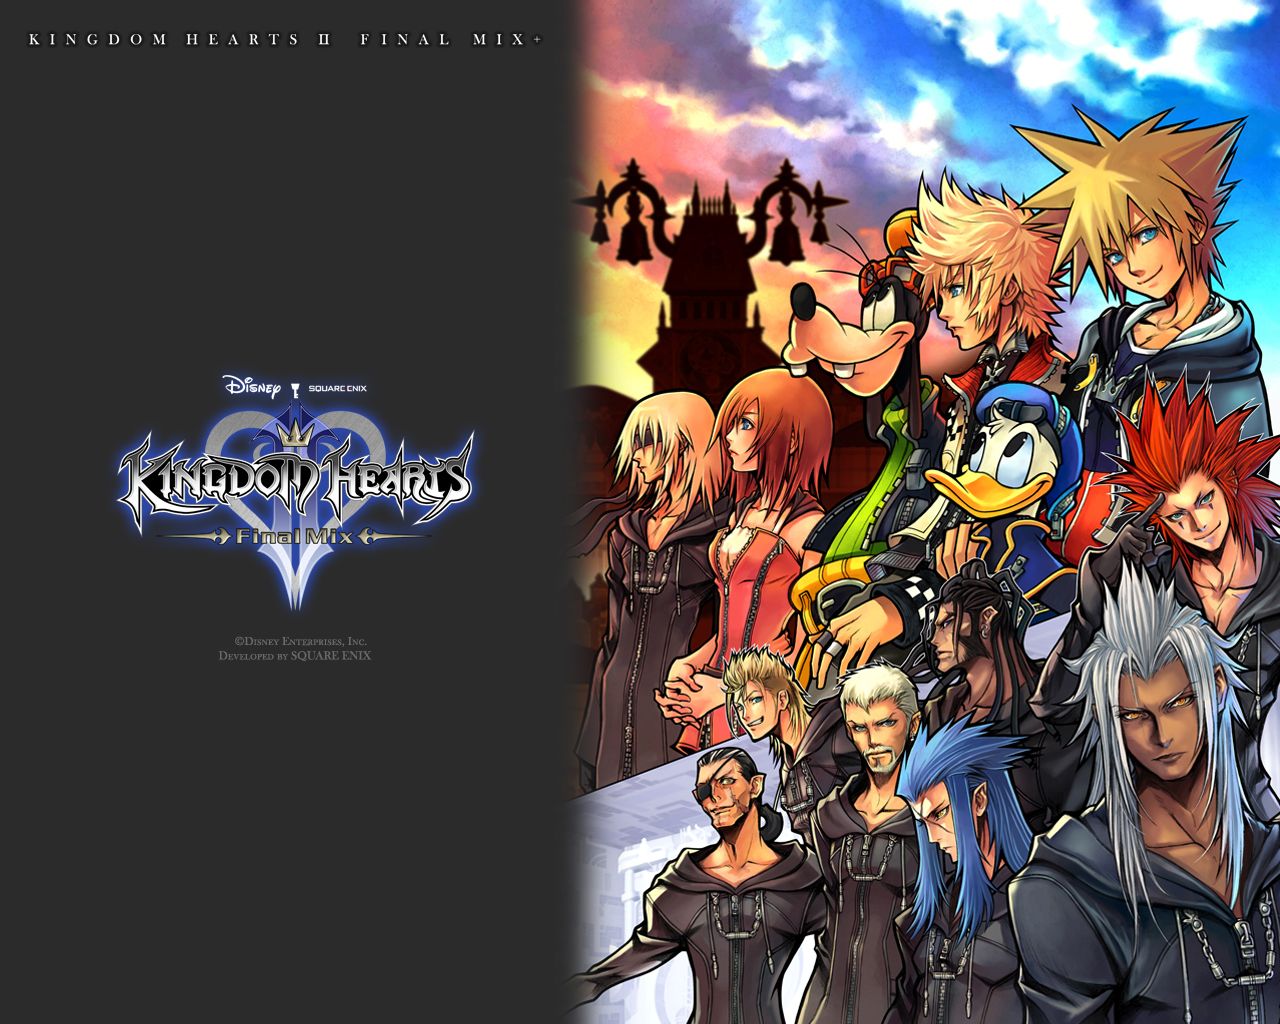 Fond ecran wallpaper Kingdom Hearts 2 Final Mix   JeuxVideofr